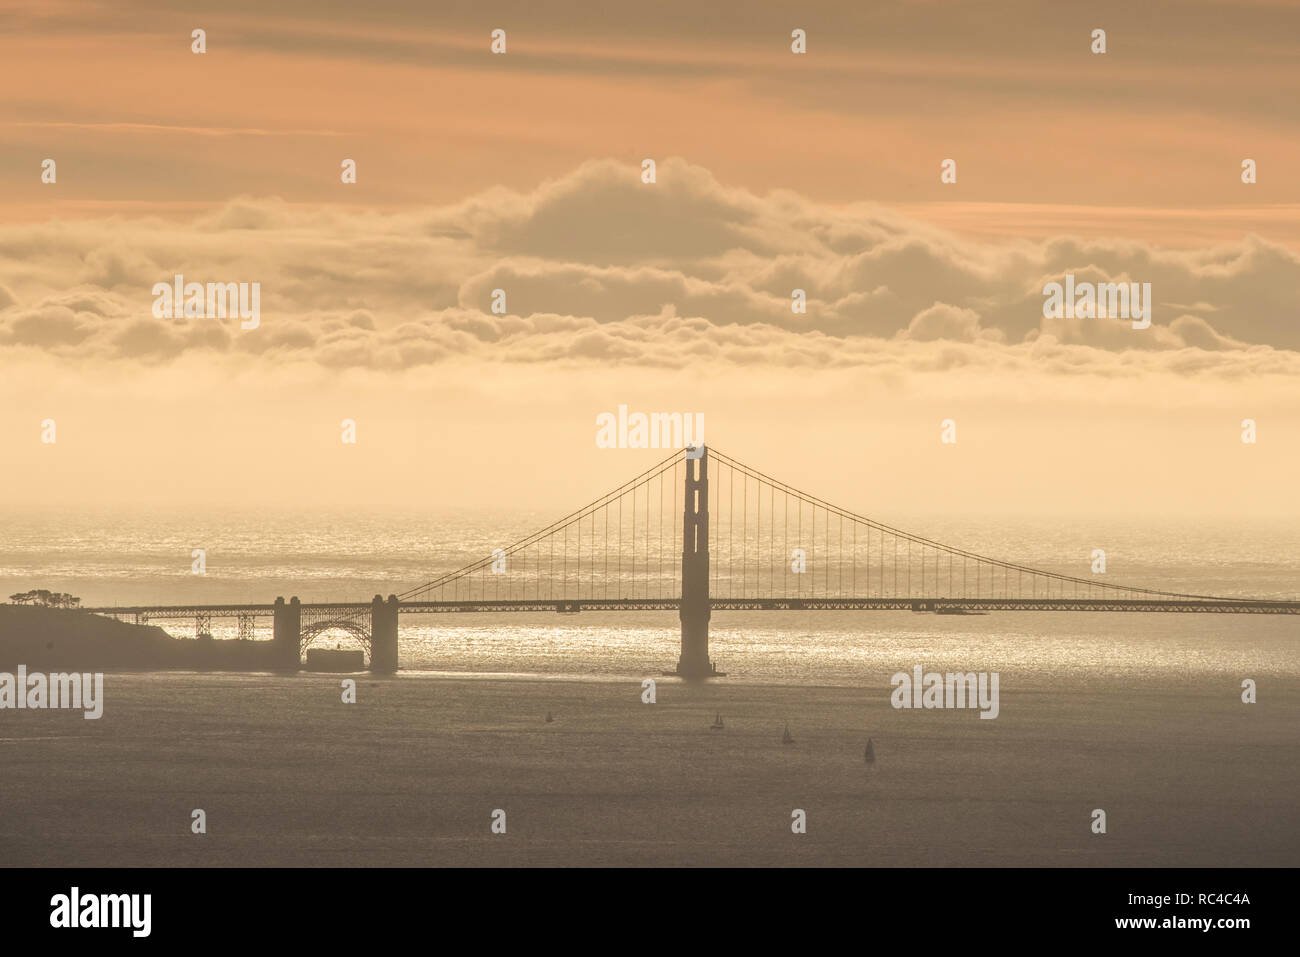 Il Golden Gate Bridge di San Francisco come si vede da lontano in Berkeley Hills durante un bel tramonto quando il cielo era di colore arancione. Foto Stock